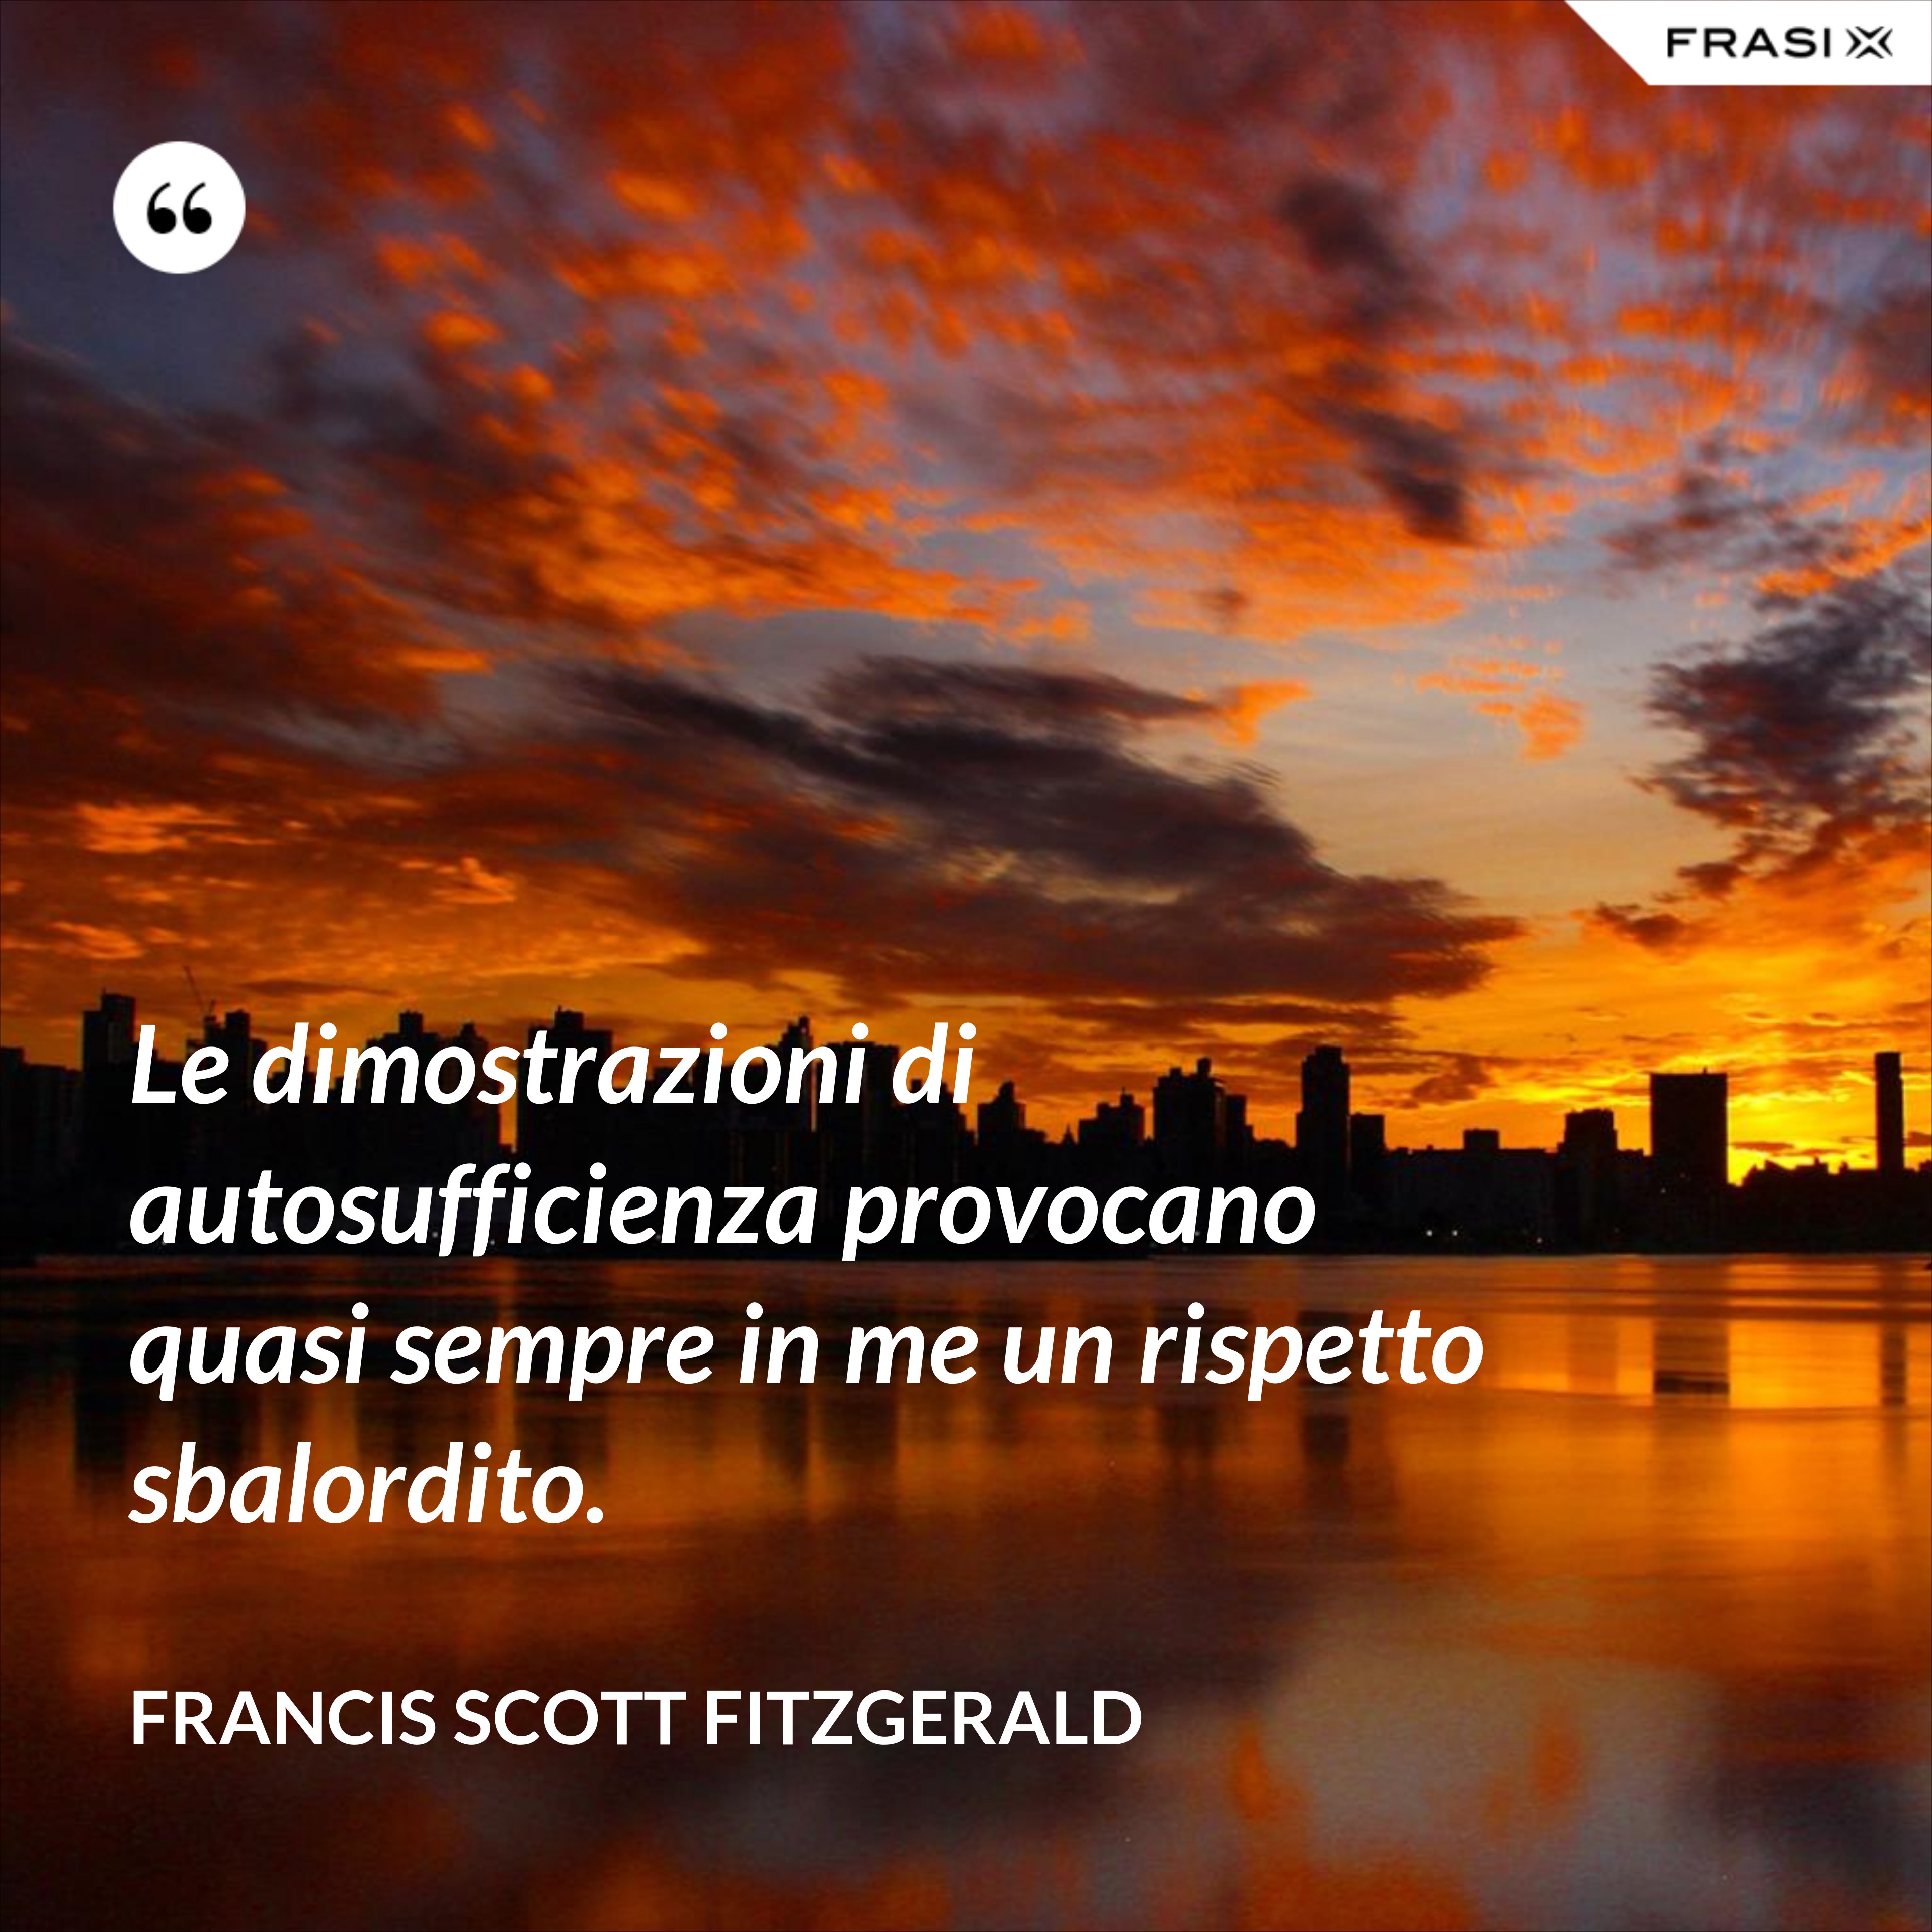 Le dimostrazioni di autosufficienza provocano quasi sempre in me un rispetto sbalordito. - Francis Scott Fitzgerald